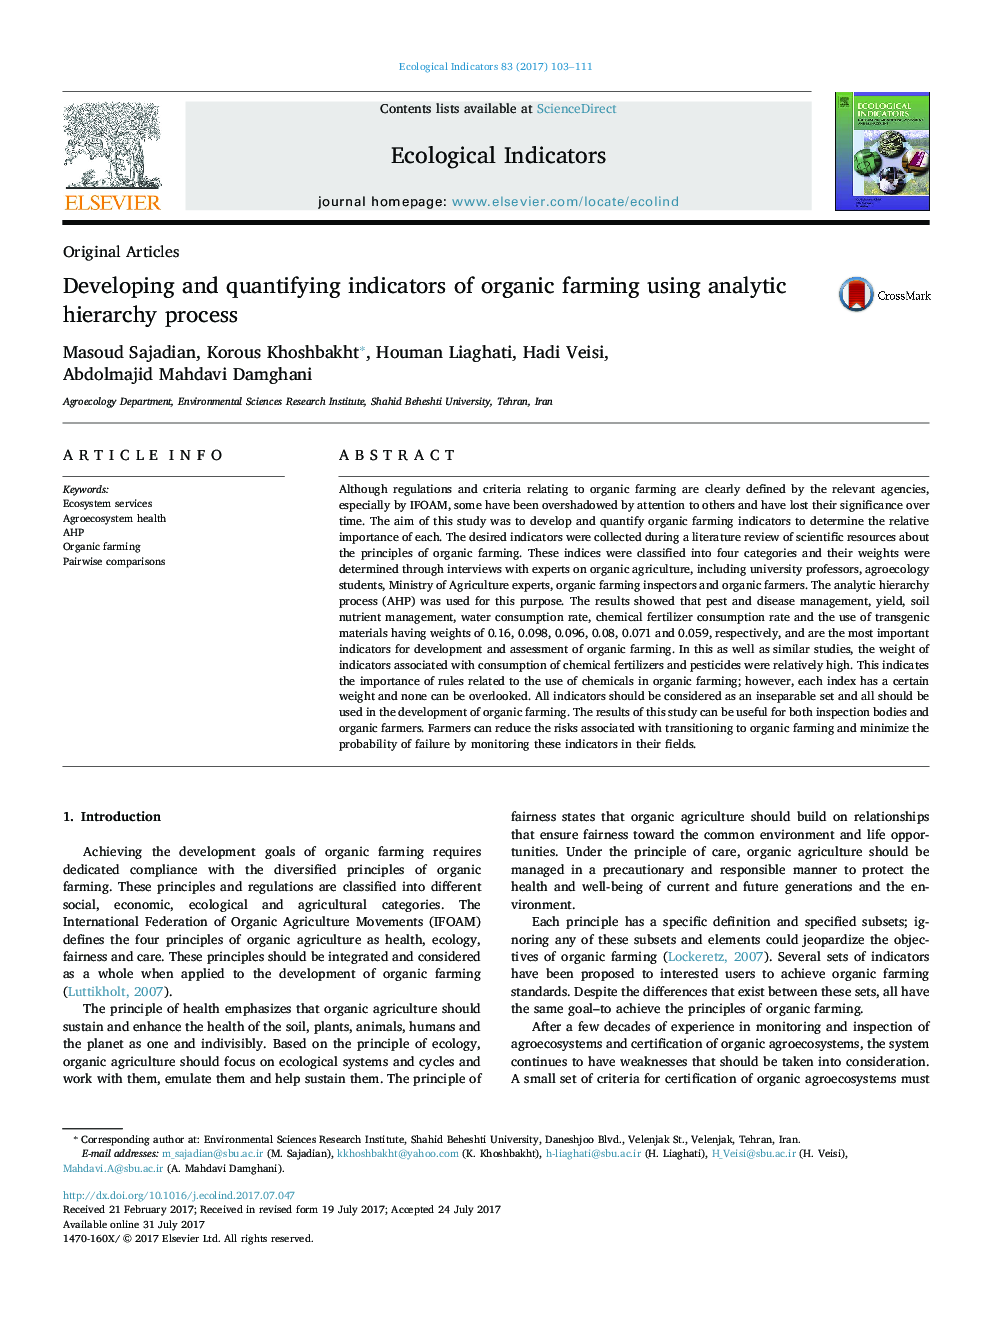 مقالات اصلی توسعه و تعیین شاخص های کشاورزی ارگانیک با استفاده از روند سلسله مراتبی تحلیلی 